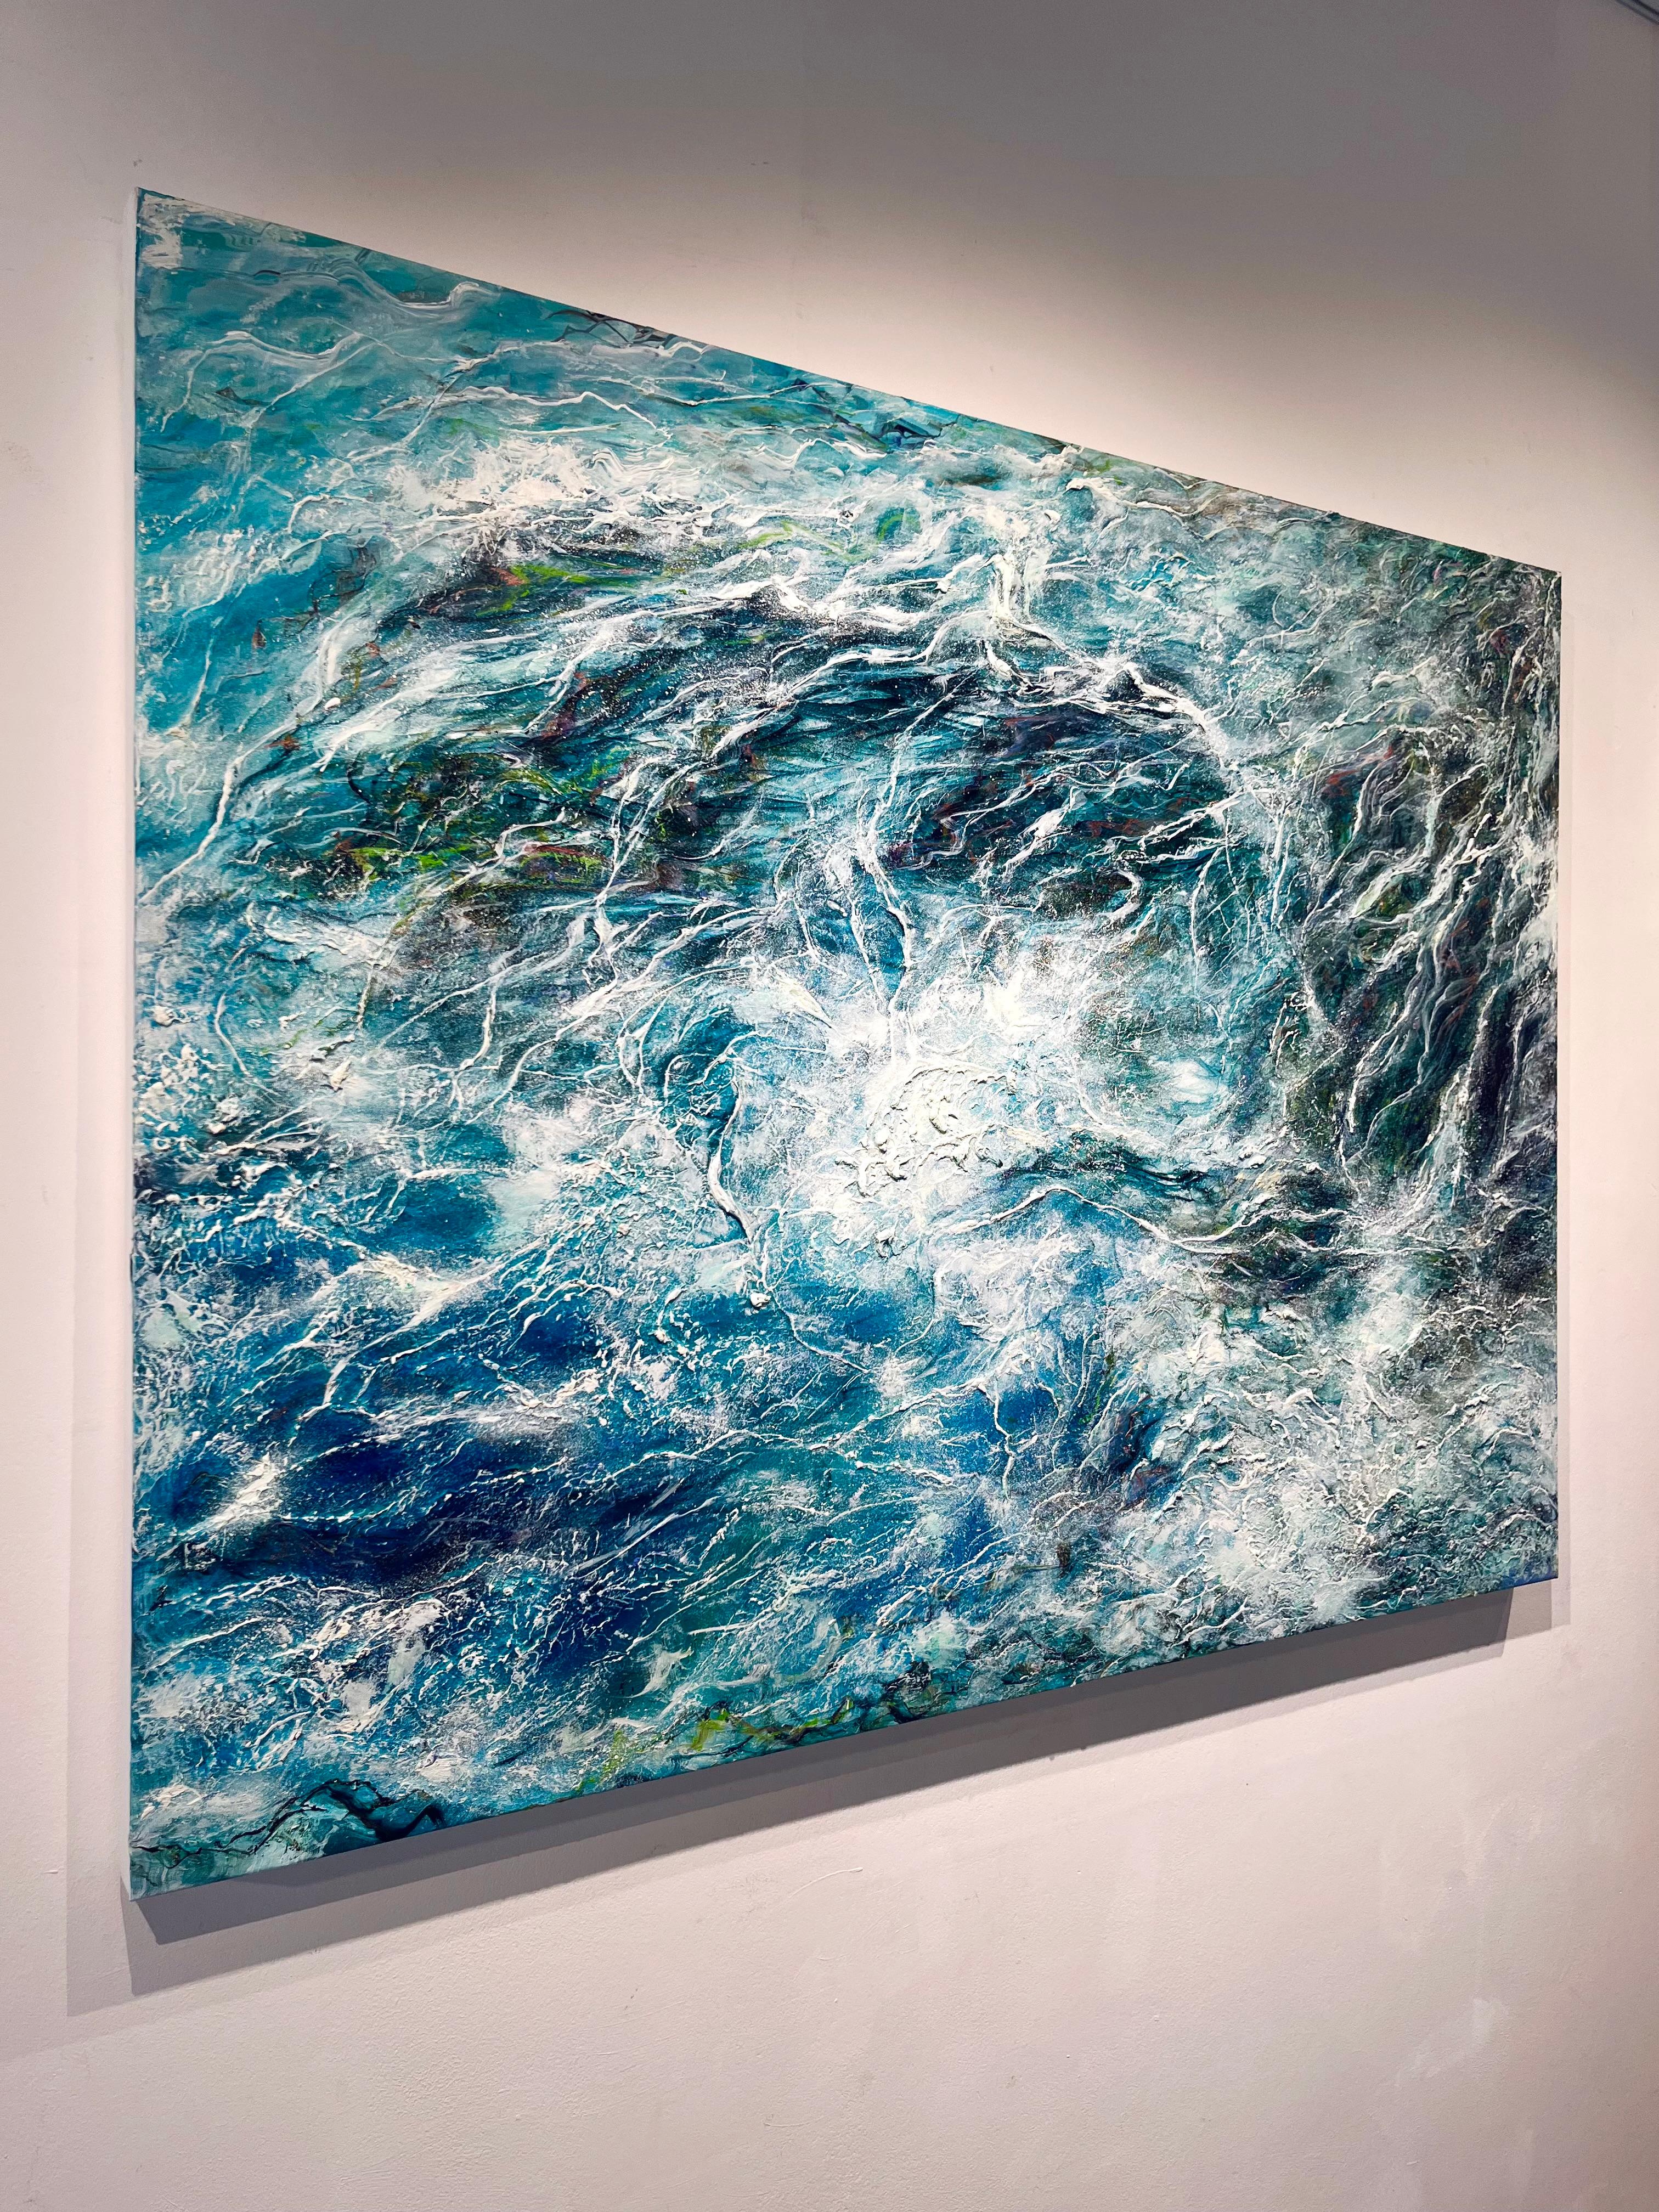 Kelp Web-originale moderne abstrakte Meereslandschaft-Ozean-Ölgemälde-zeitgenössische Kunst – Painting von Nikki Baxendale